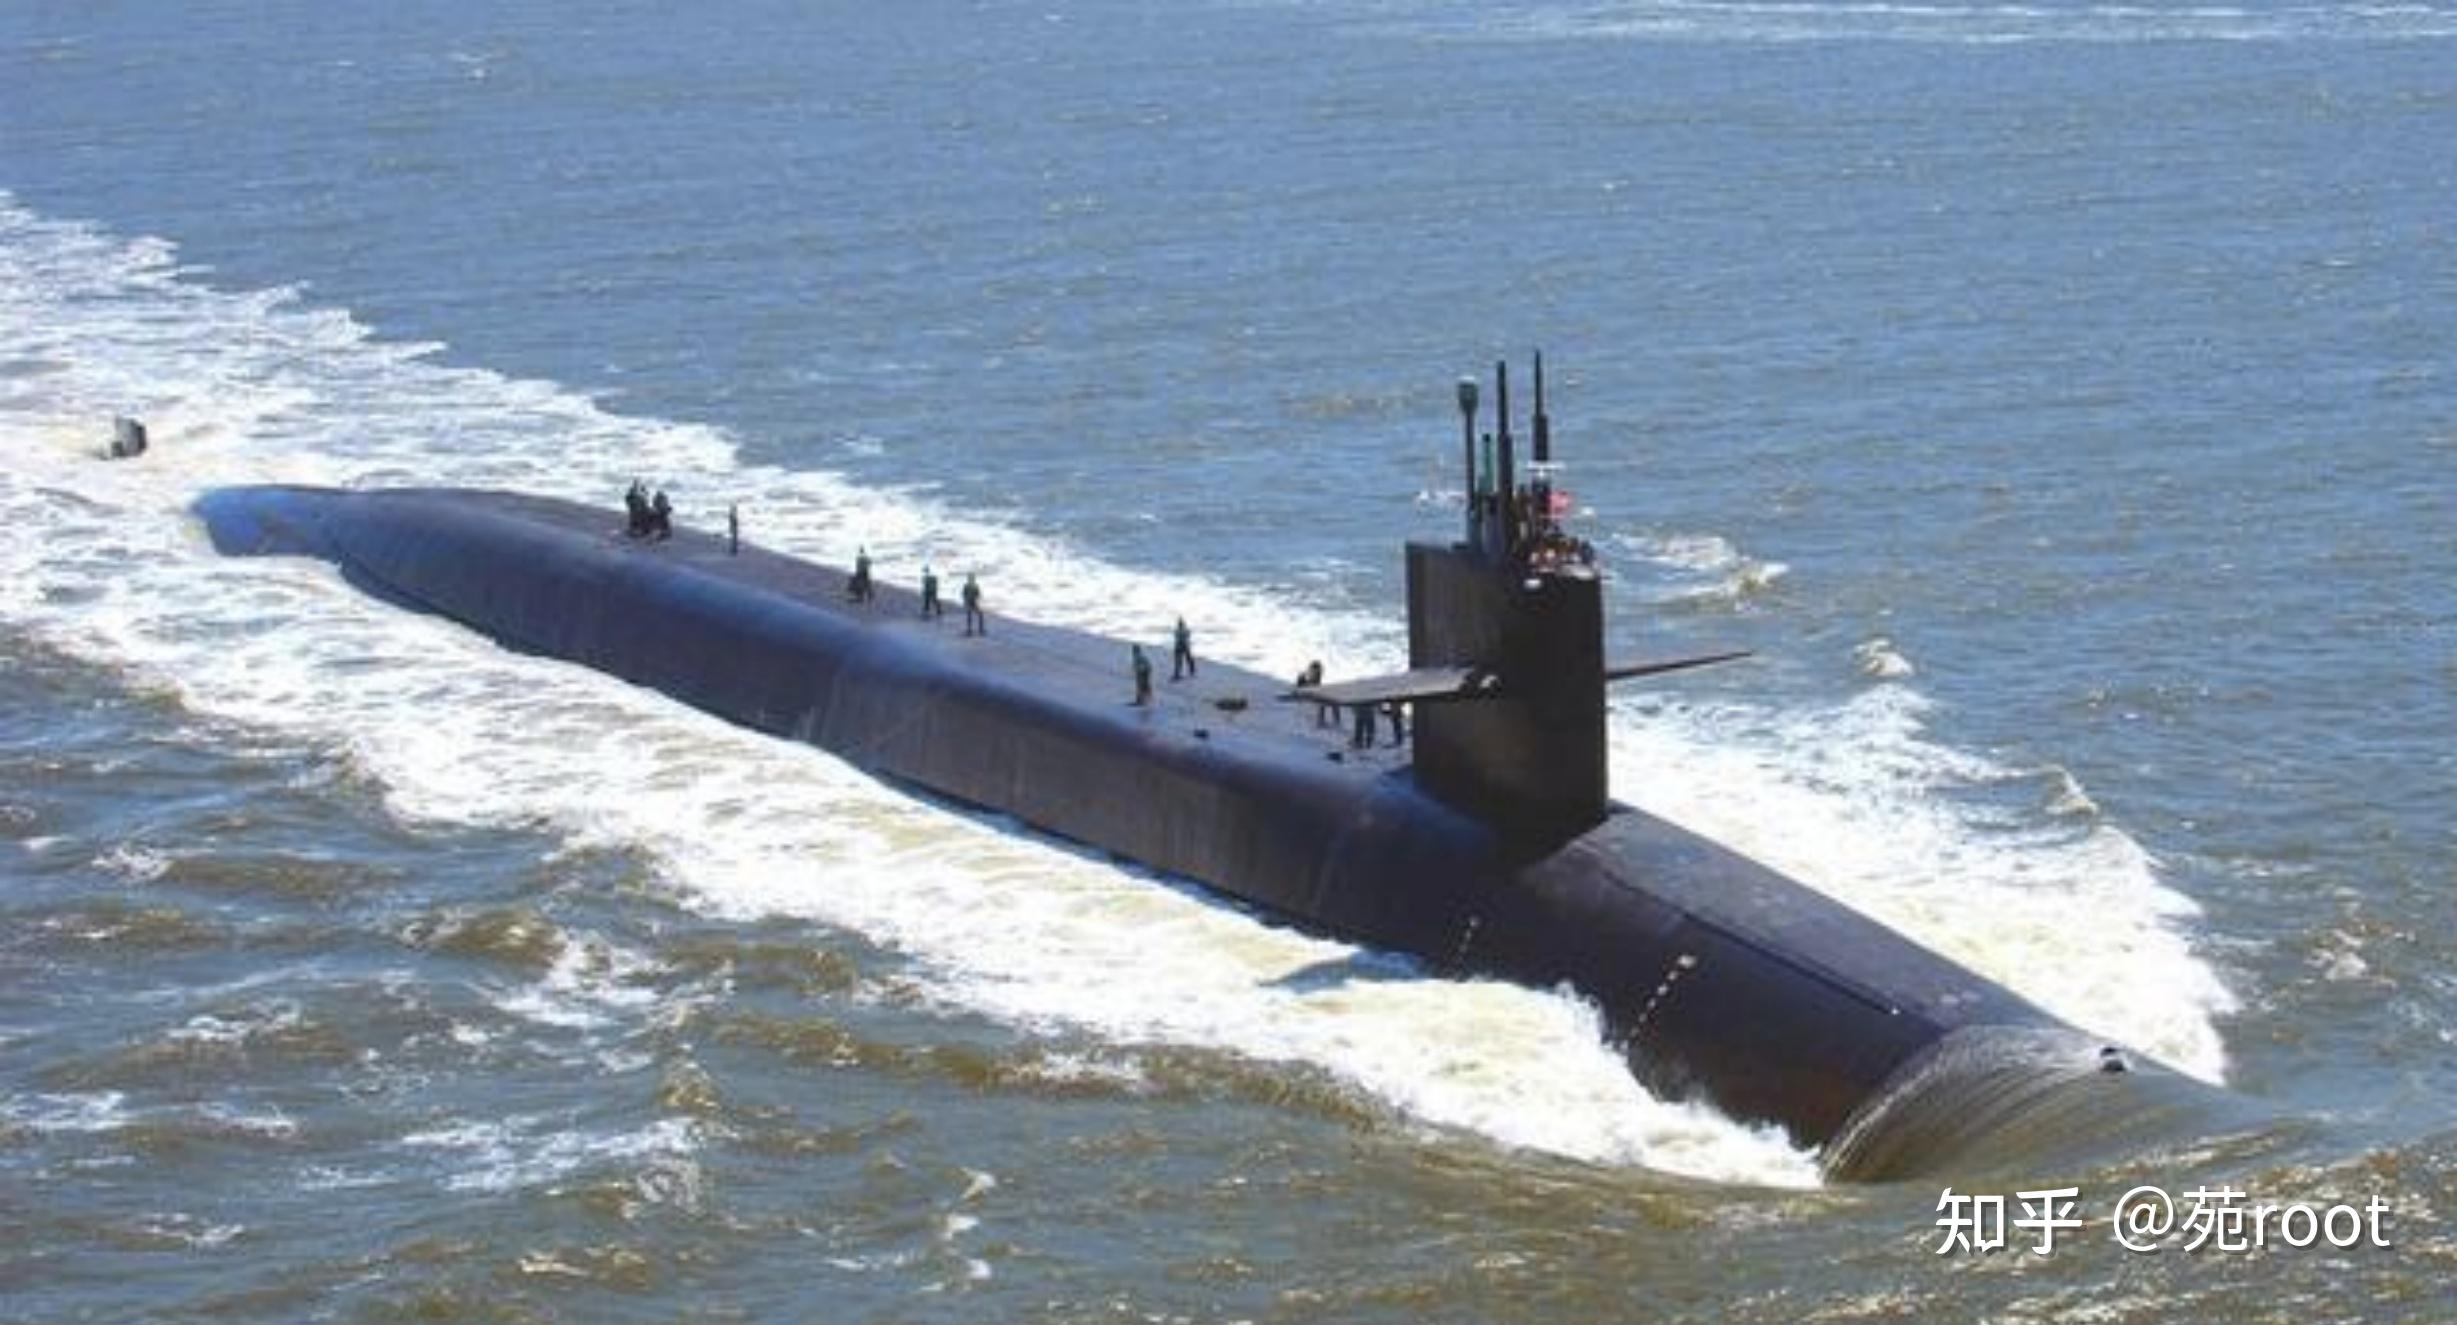 美军用14艘俄亥俄级战略核潜艇,来充当核打击力量,在每时每刻,美军都